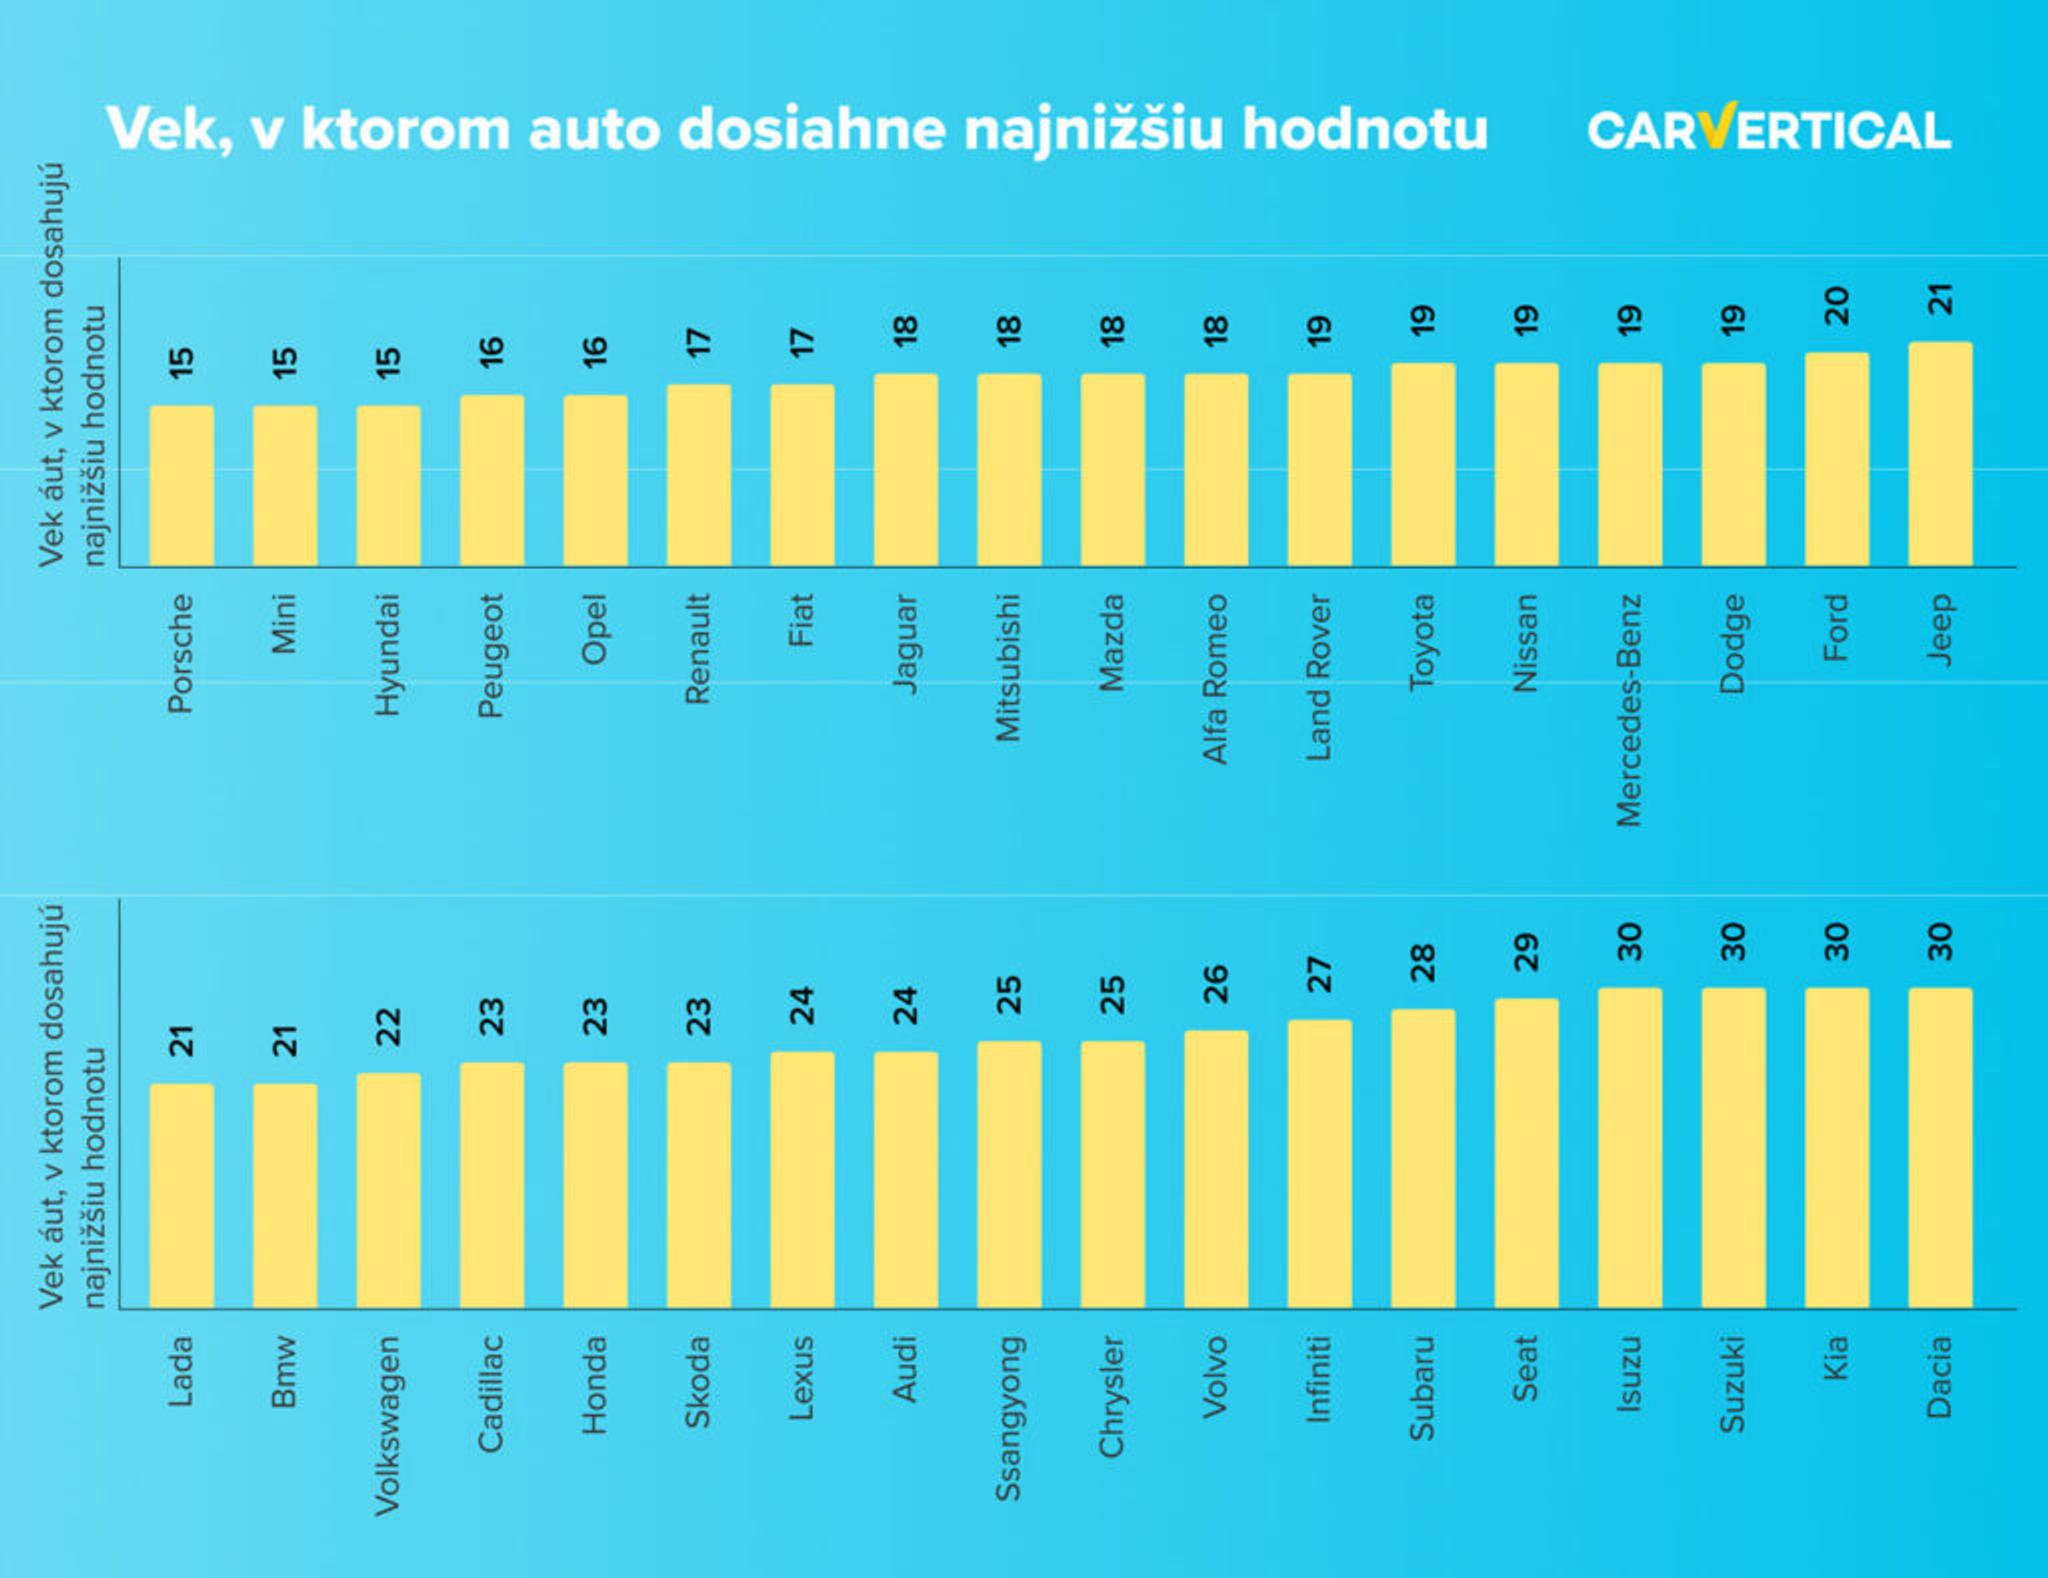 Ojazdené vozidlá dosahujú svoju najnižšiu hodnotu v rôznych štádiách